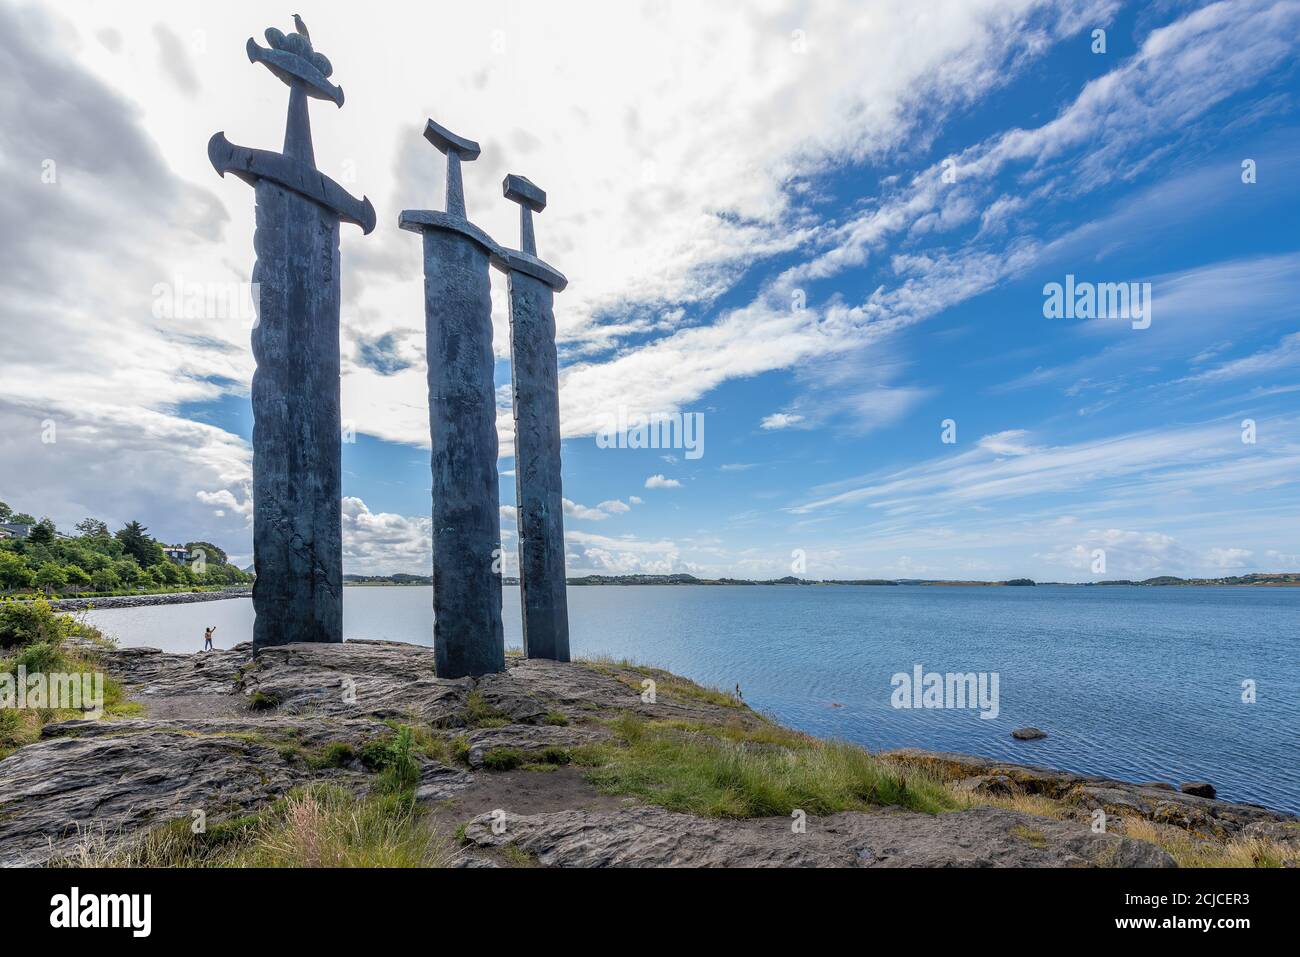 Stavanger, Norvegia - tre grandi spade stanno sulla collina come ricordo della battaglia di Hafrsfjord nell'anno 872, quando la fiera del re Harald Foto Stock